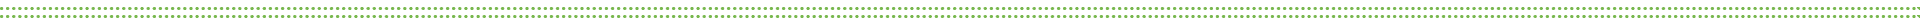 ZenWolf-GreenBorder